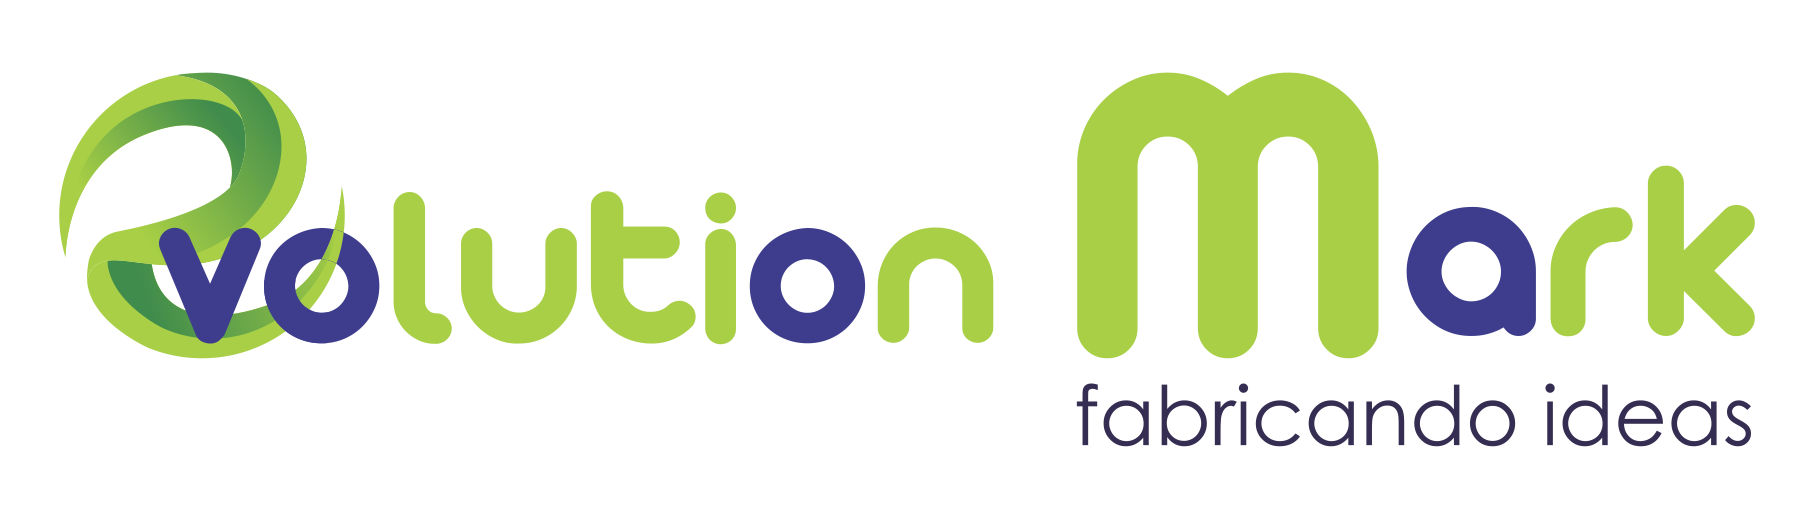 evolution mark logo 2